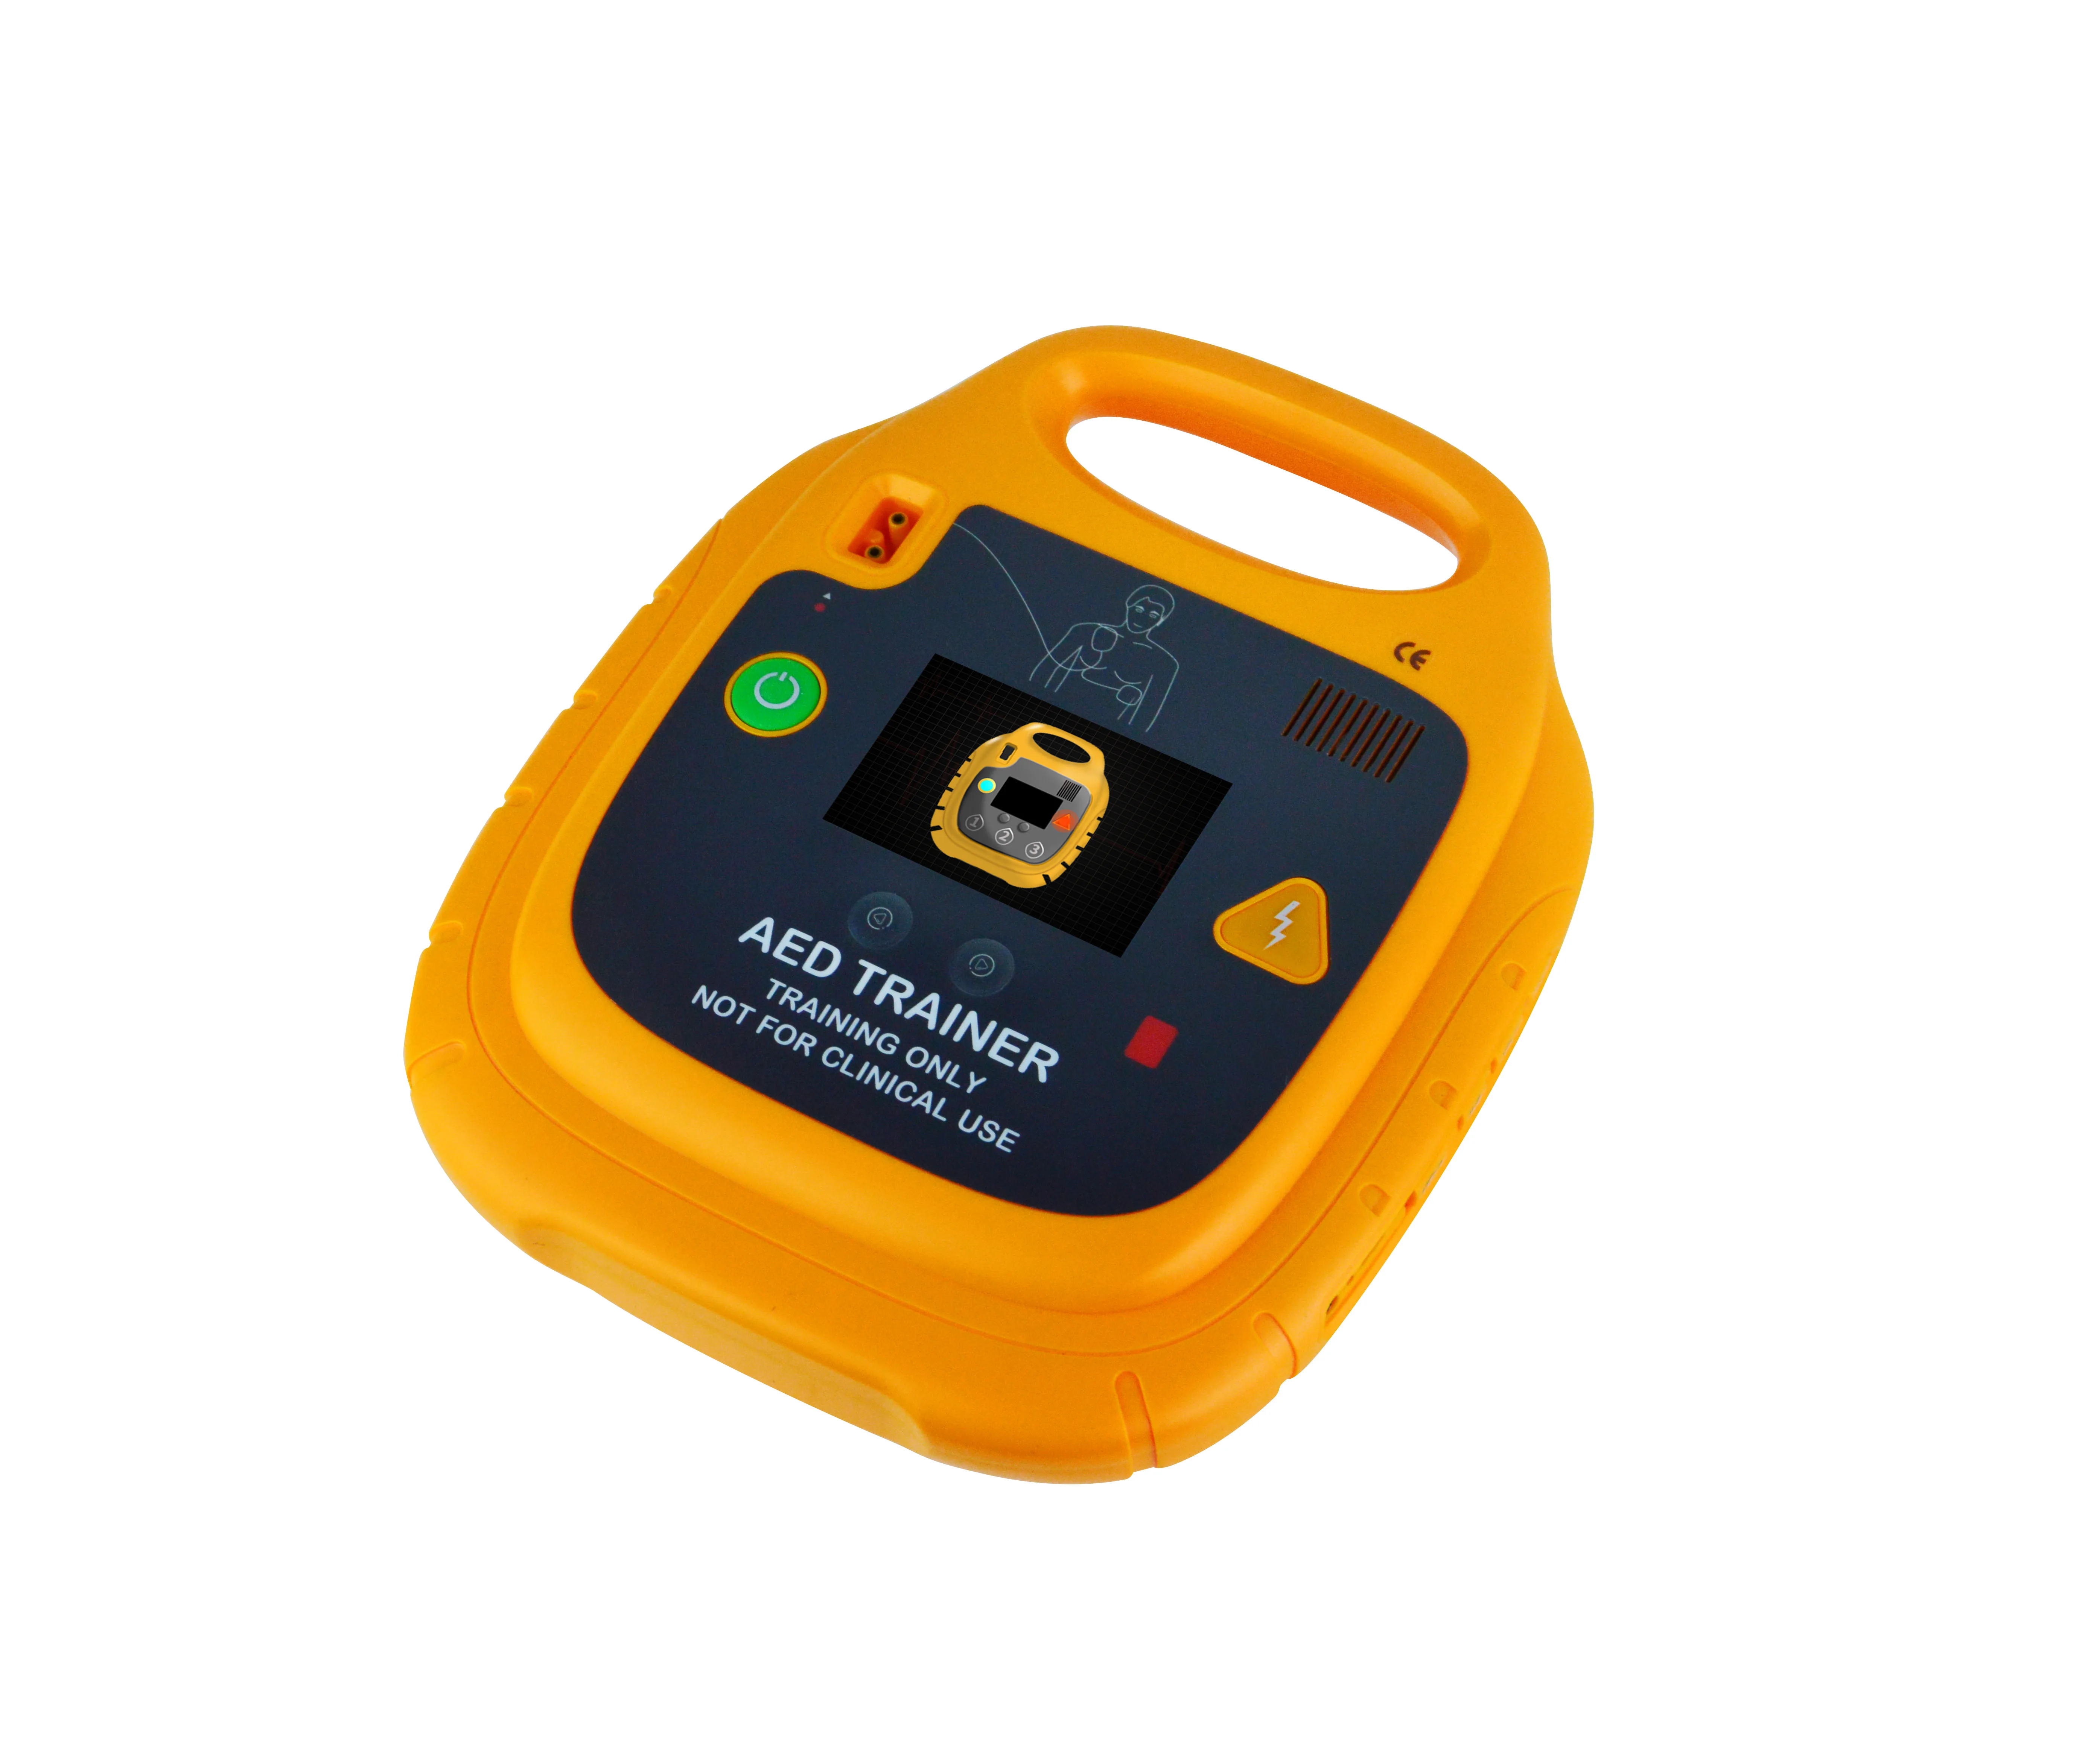 
WAP-Health Defibrillator AED Trainer Machine 